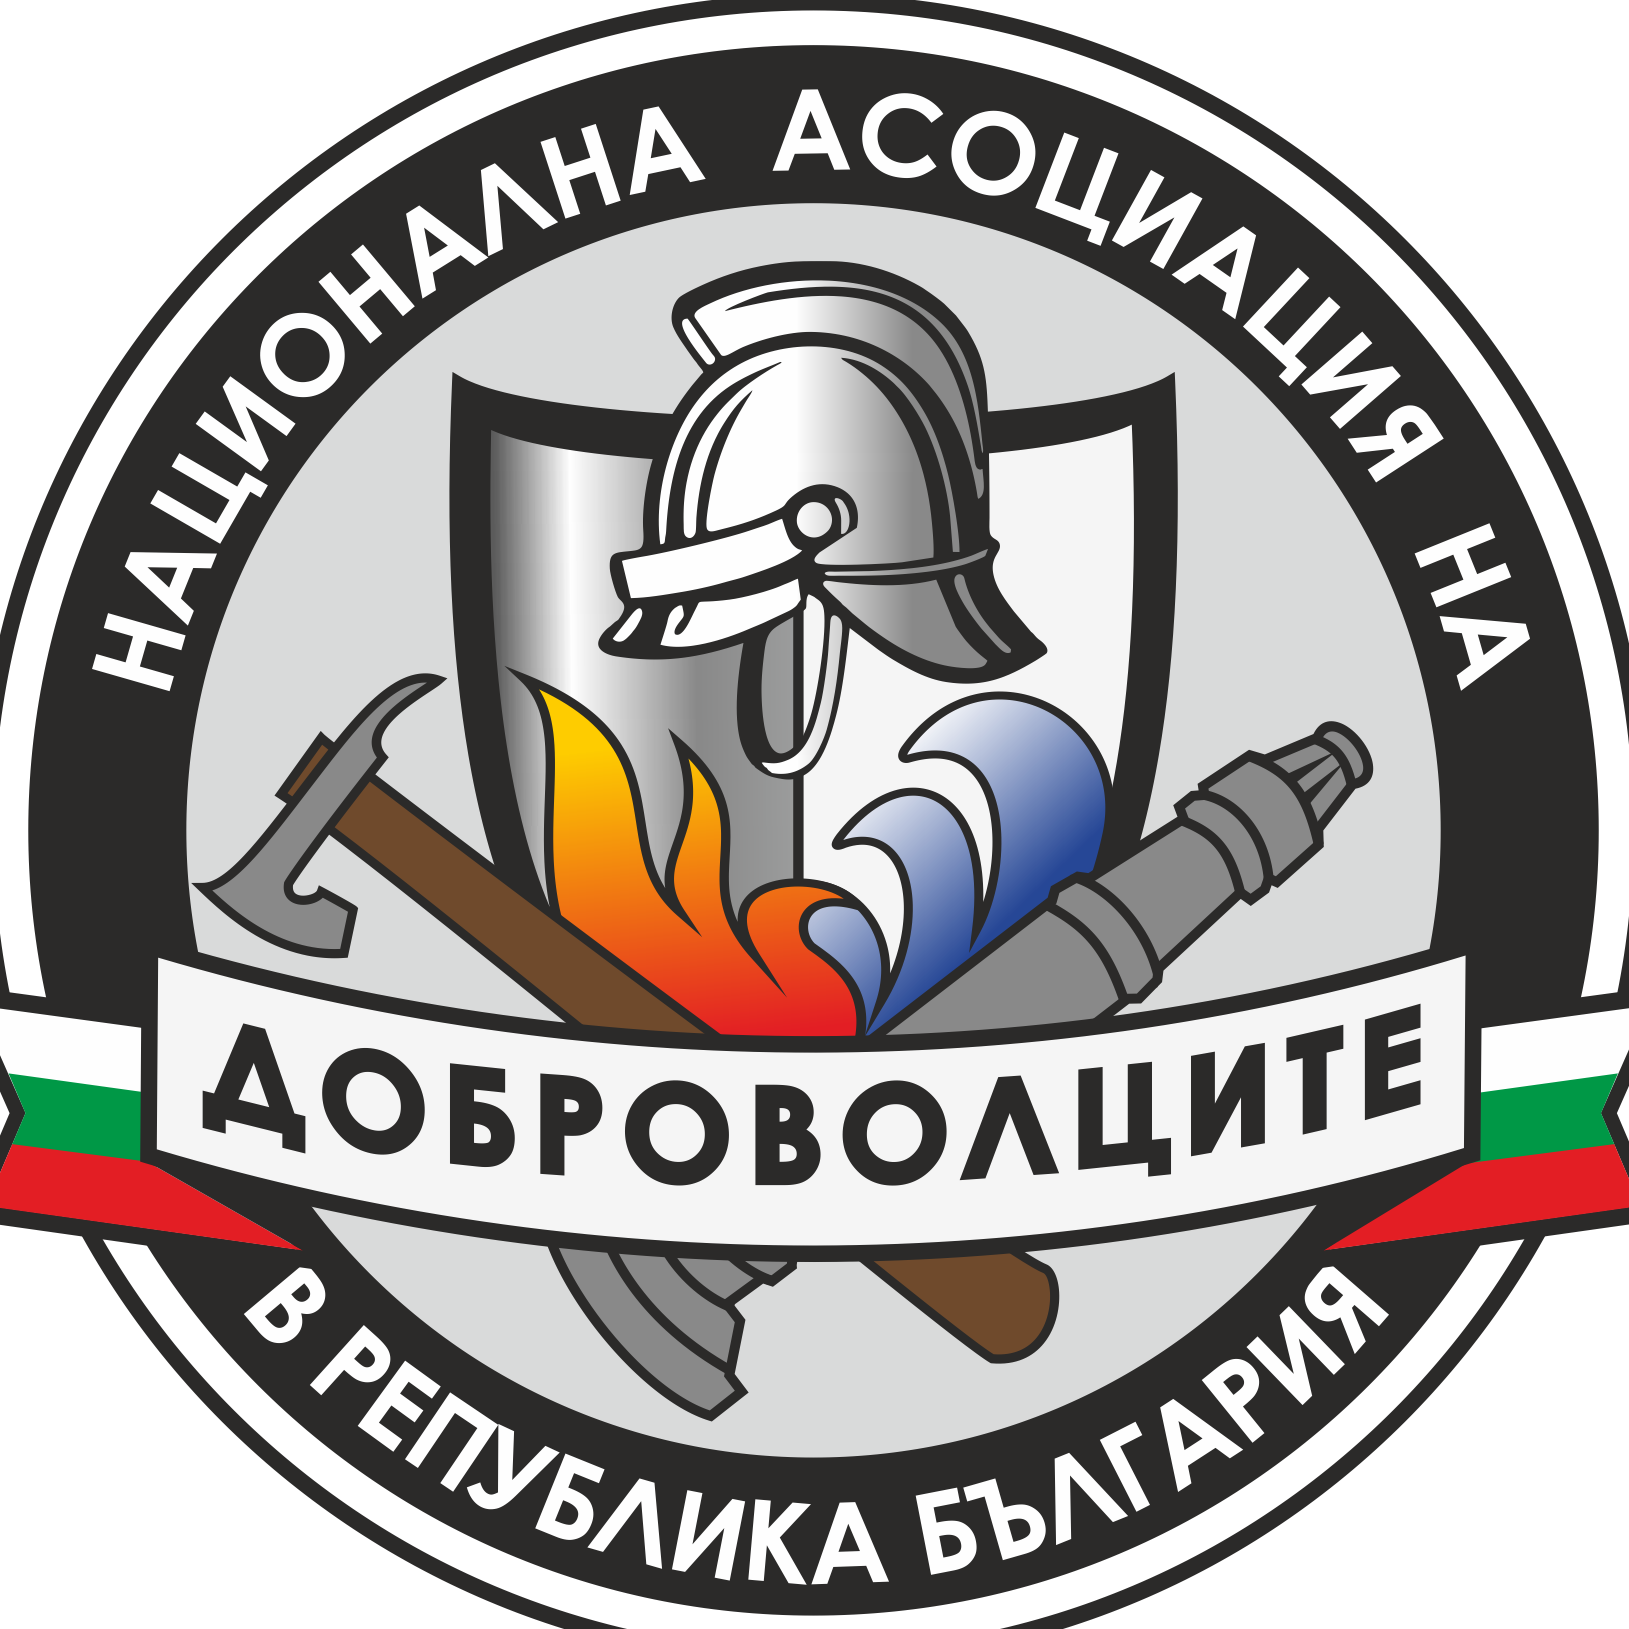 Национална асоциация на доброволците в Република България logo